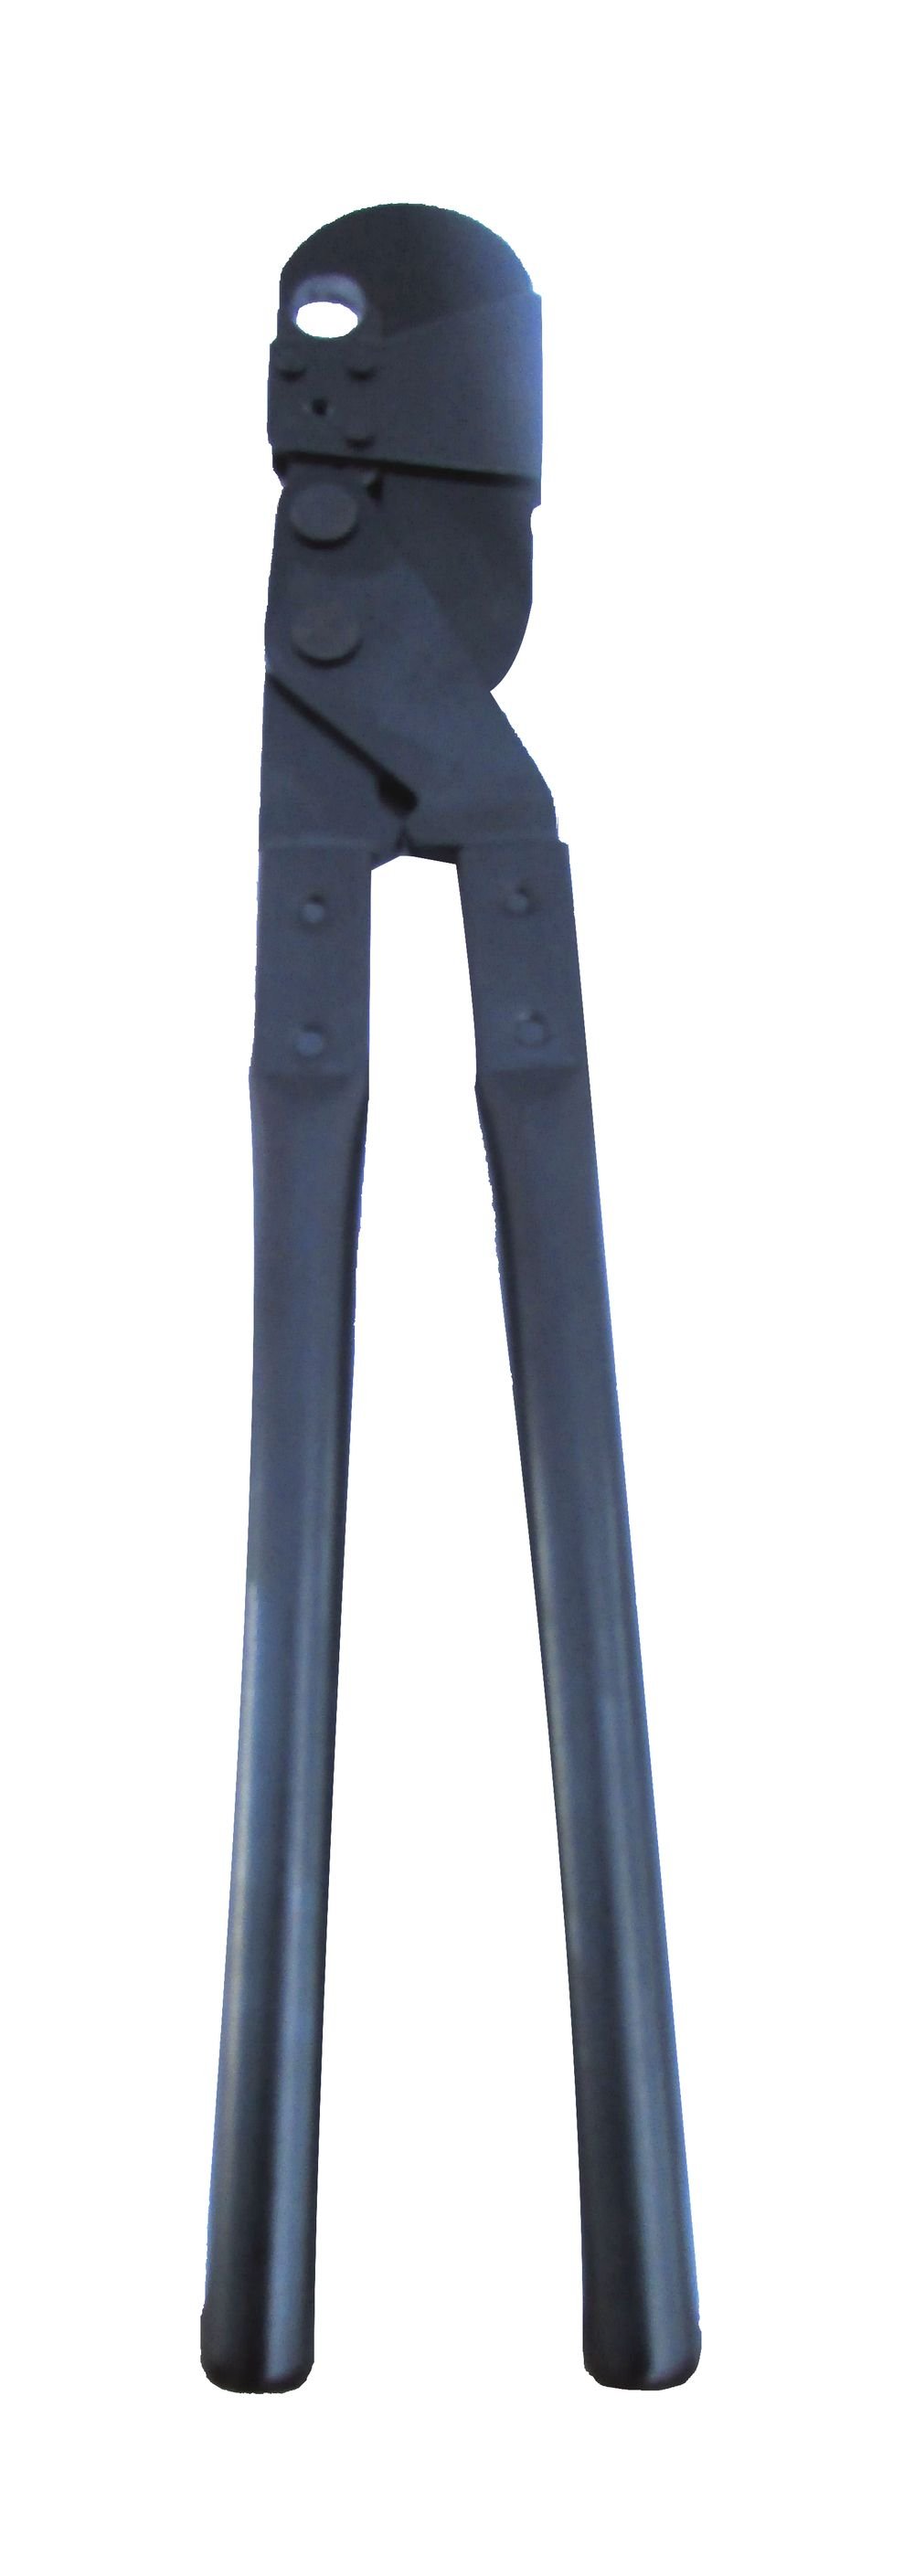 Buteline BFR22 22mm Standard Clamp Tool